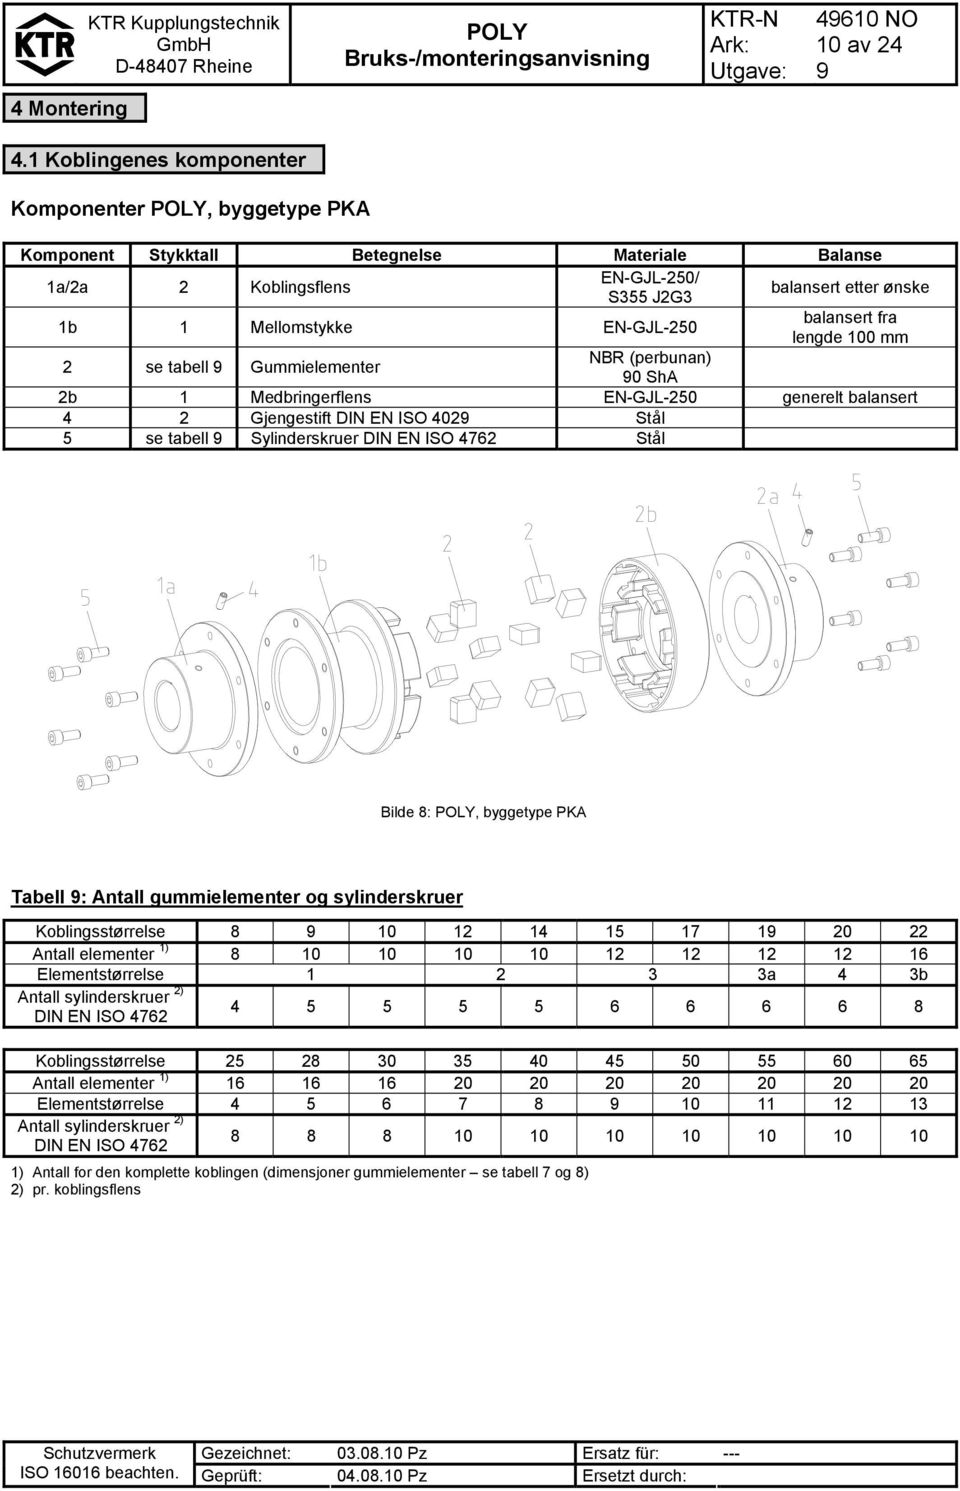 Gummielementer NBR (perbunan) 0 ShA balansert etter ønske balansert fra lengde 100 mm 2b 1 Medbringerflens EN-GJL-250 generelt balansert 4 2 Gjengestift DIN EN ISO 402 Stål 5 se tabell Sylinderskruer